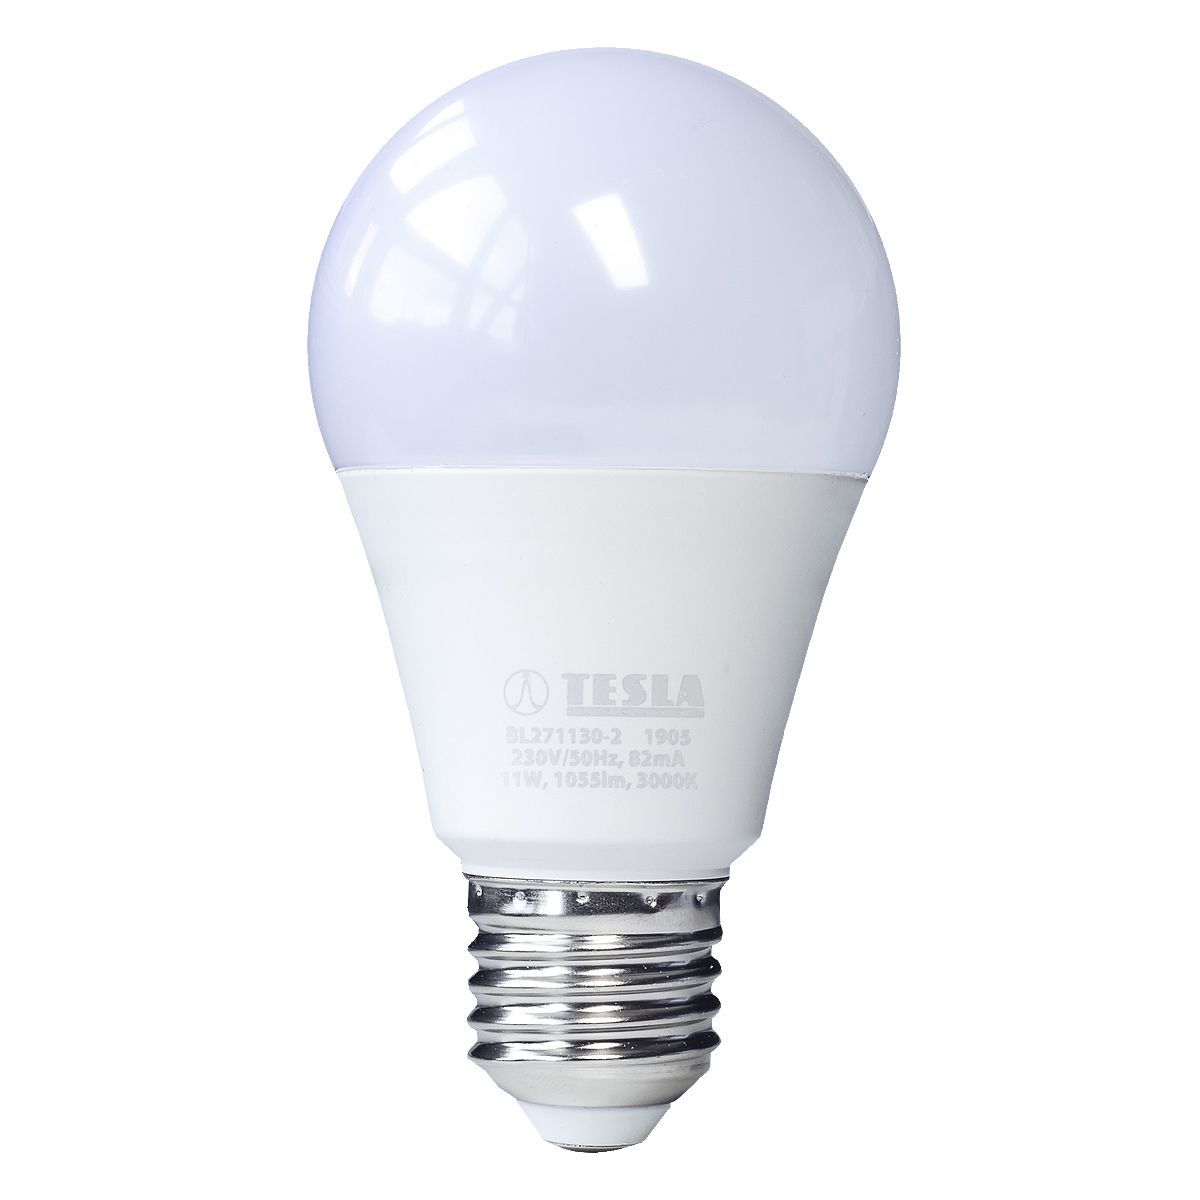 Tesla - LED žárovka BULB E27, 11W, 230V, 1055lm, 25 000h, 3000K teplá bílá, 220st Tesla Lighting